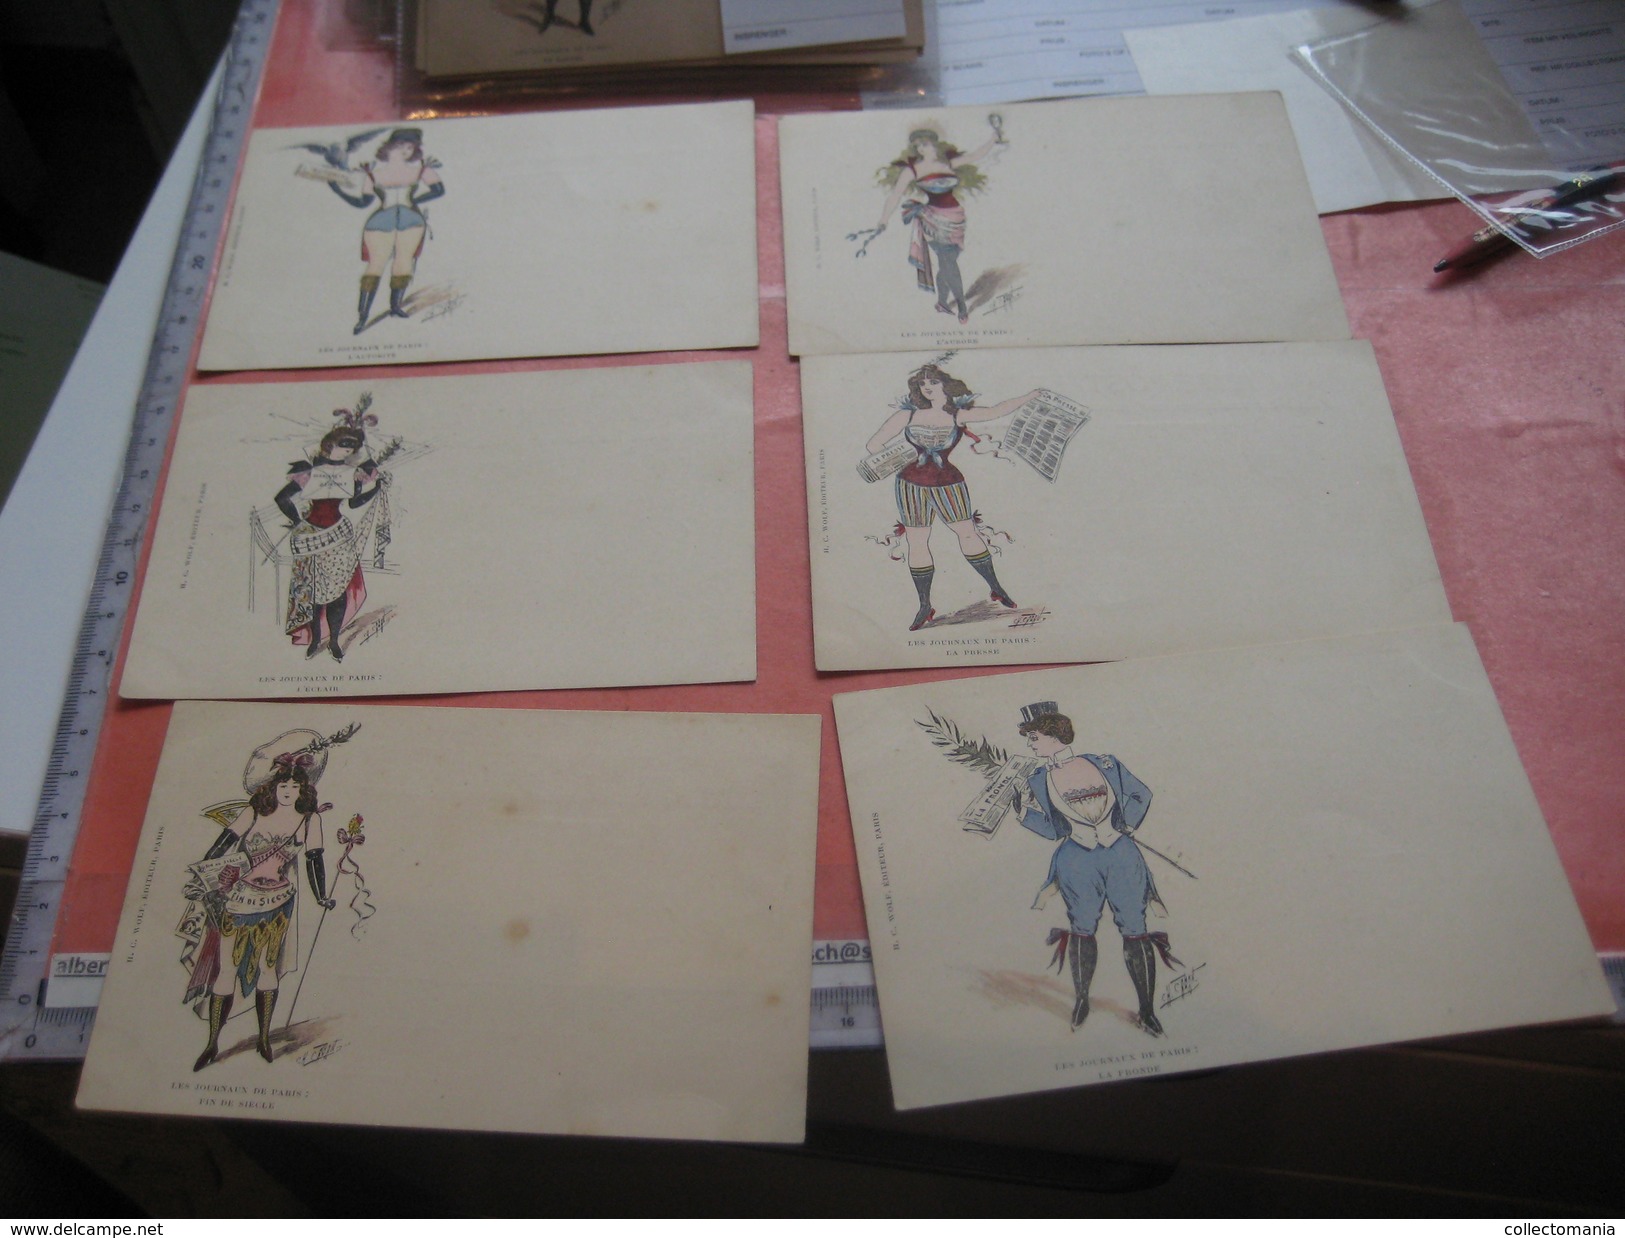 13 Cartes postales chromos litho PUB, avant c1900 gazet krant Zeitung newspaper, editeur WOLF - illustrateur CABANT